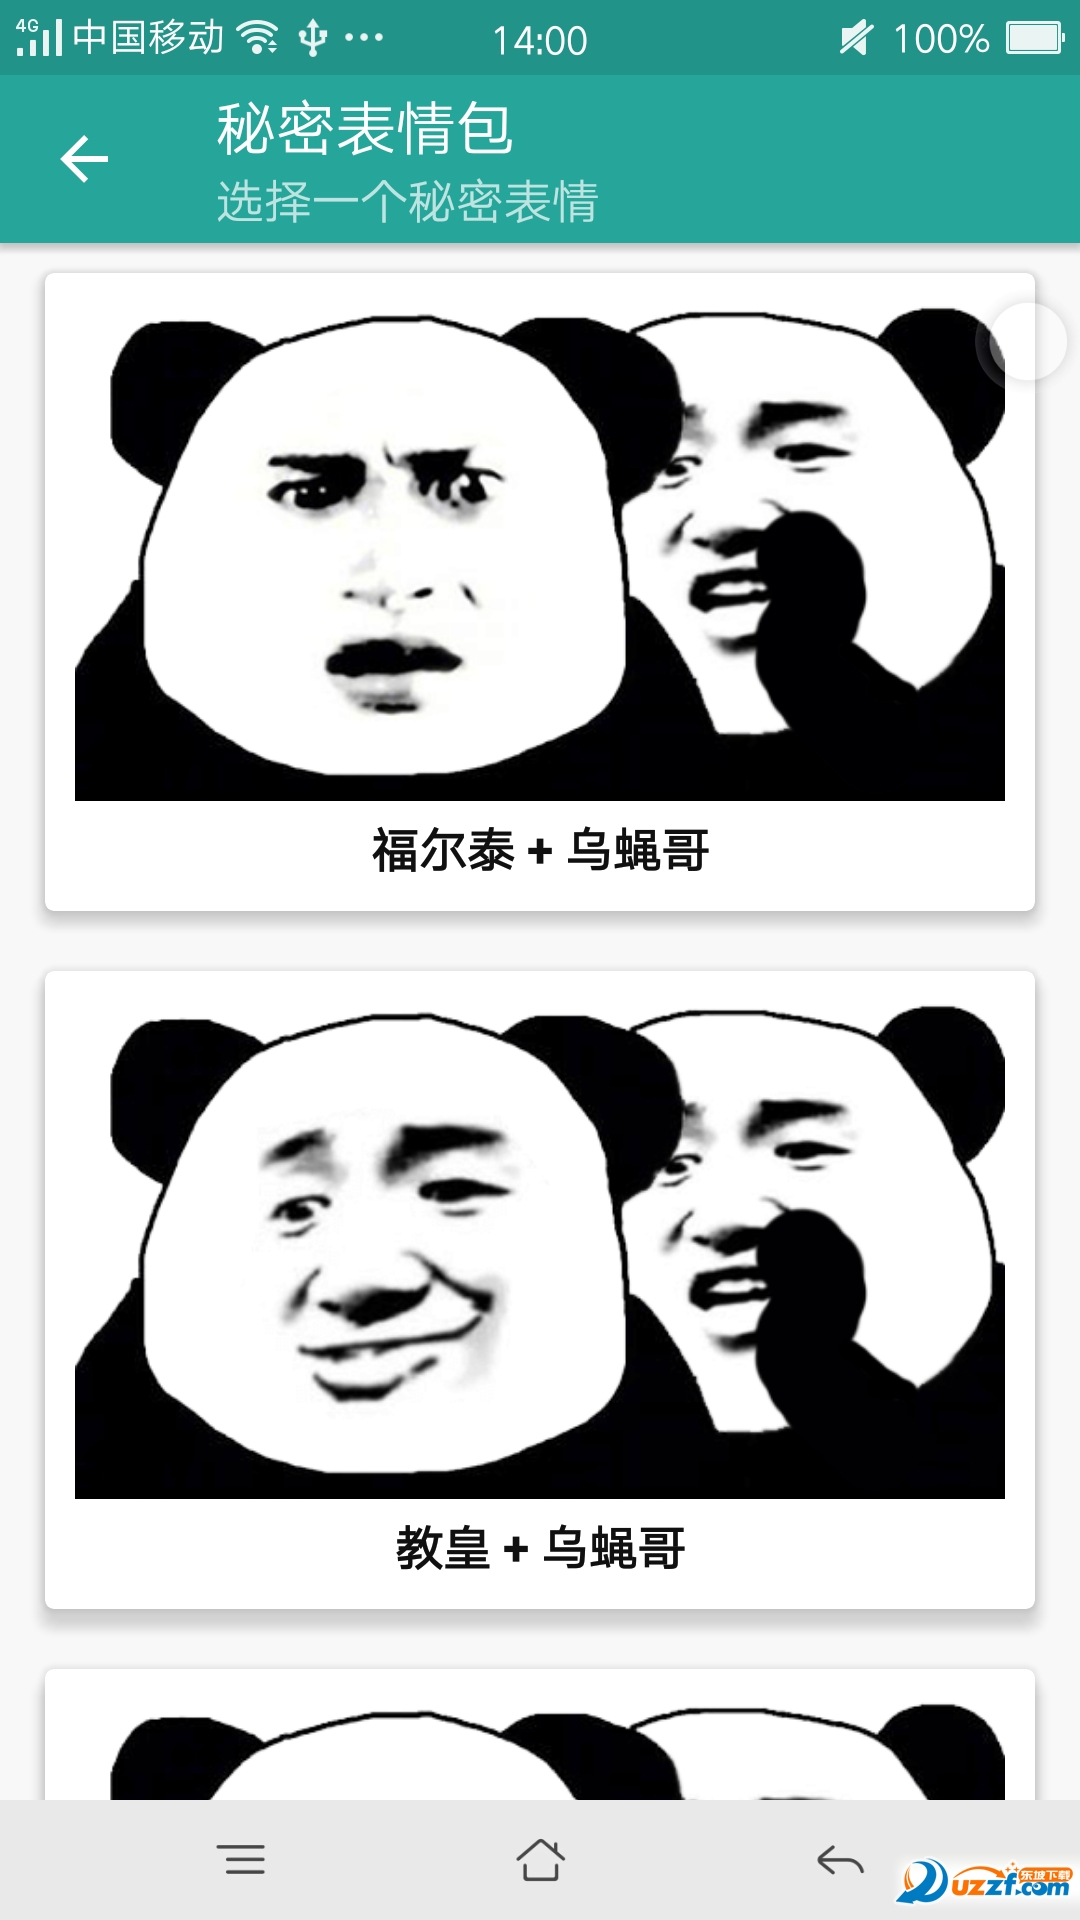 熊猫表情包生成器手机版